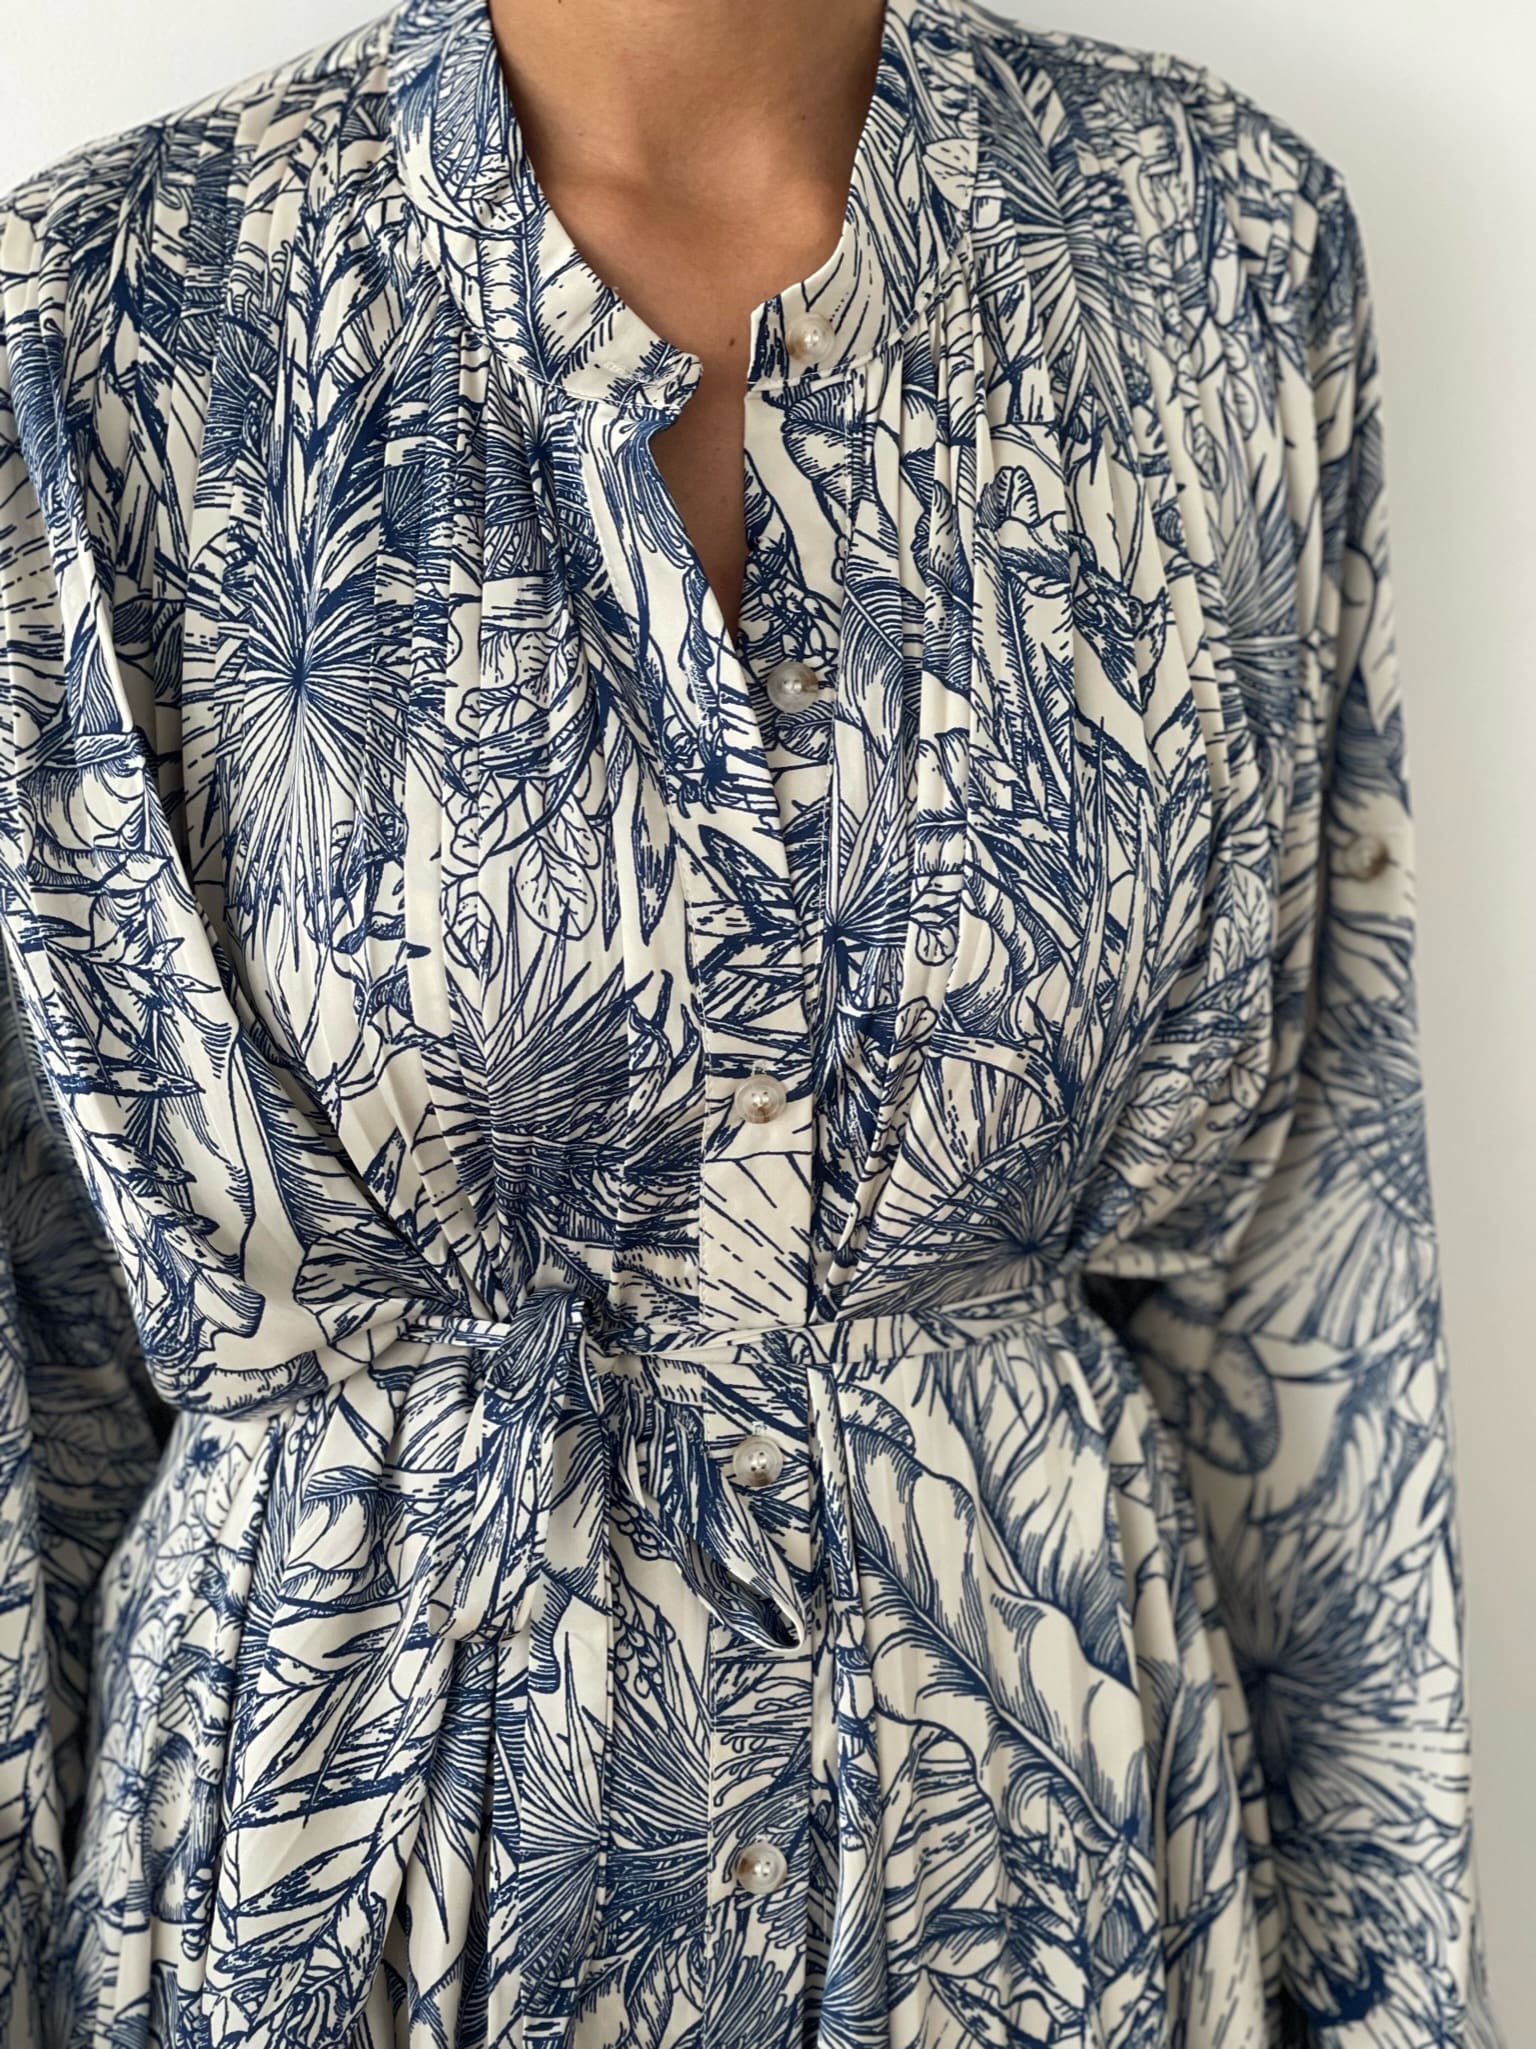 Détail de robe maxi à motif tropical avec boutons, ceinture à la taille pour une silhouette élancée